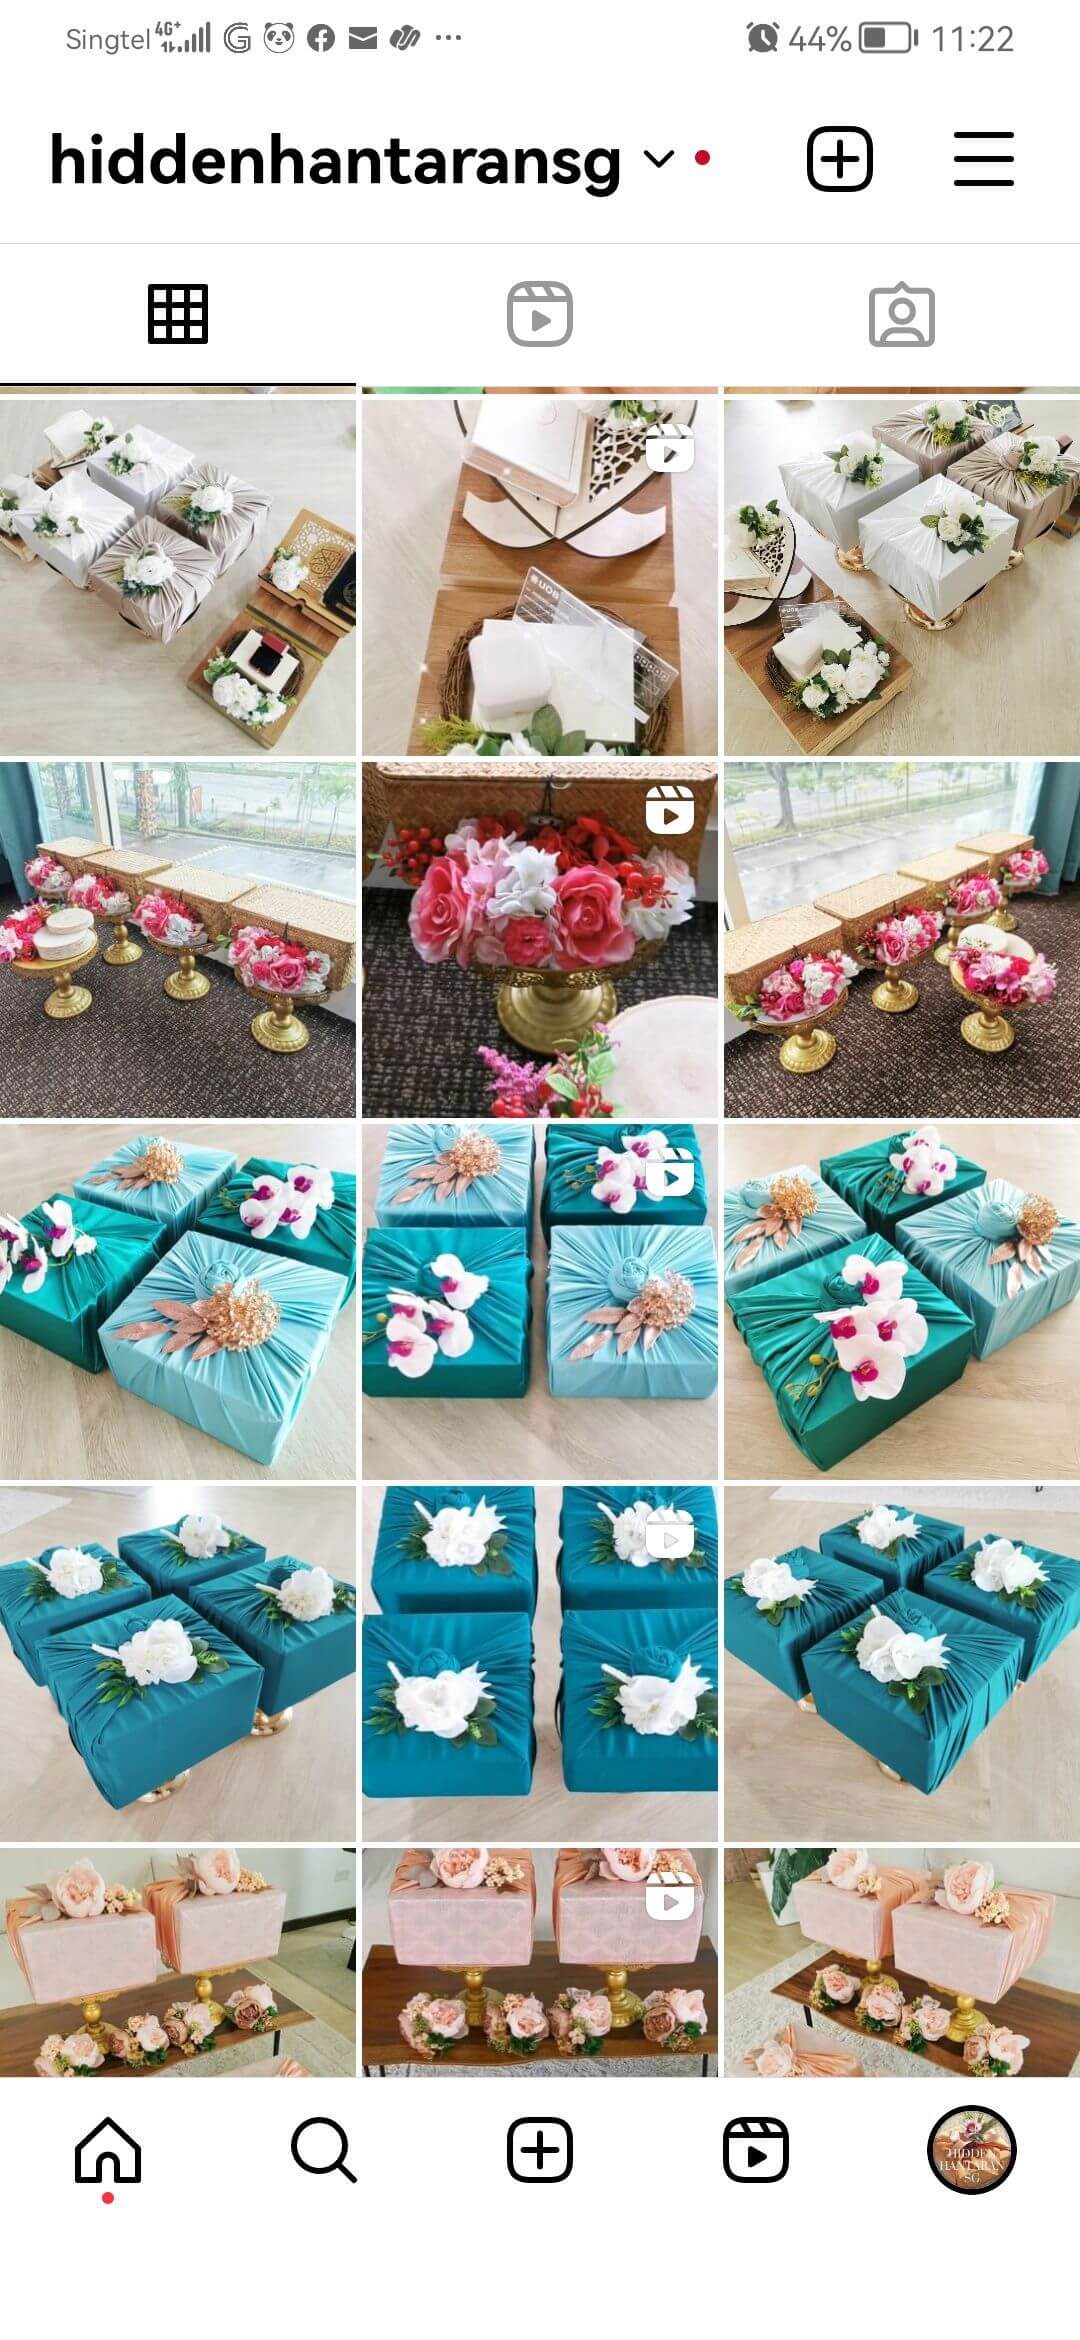 Hidden Hantaran SG For Takeover (Wedding gift boxes and Bridesmaid boxes)